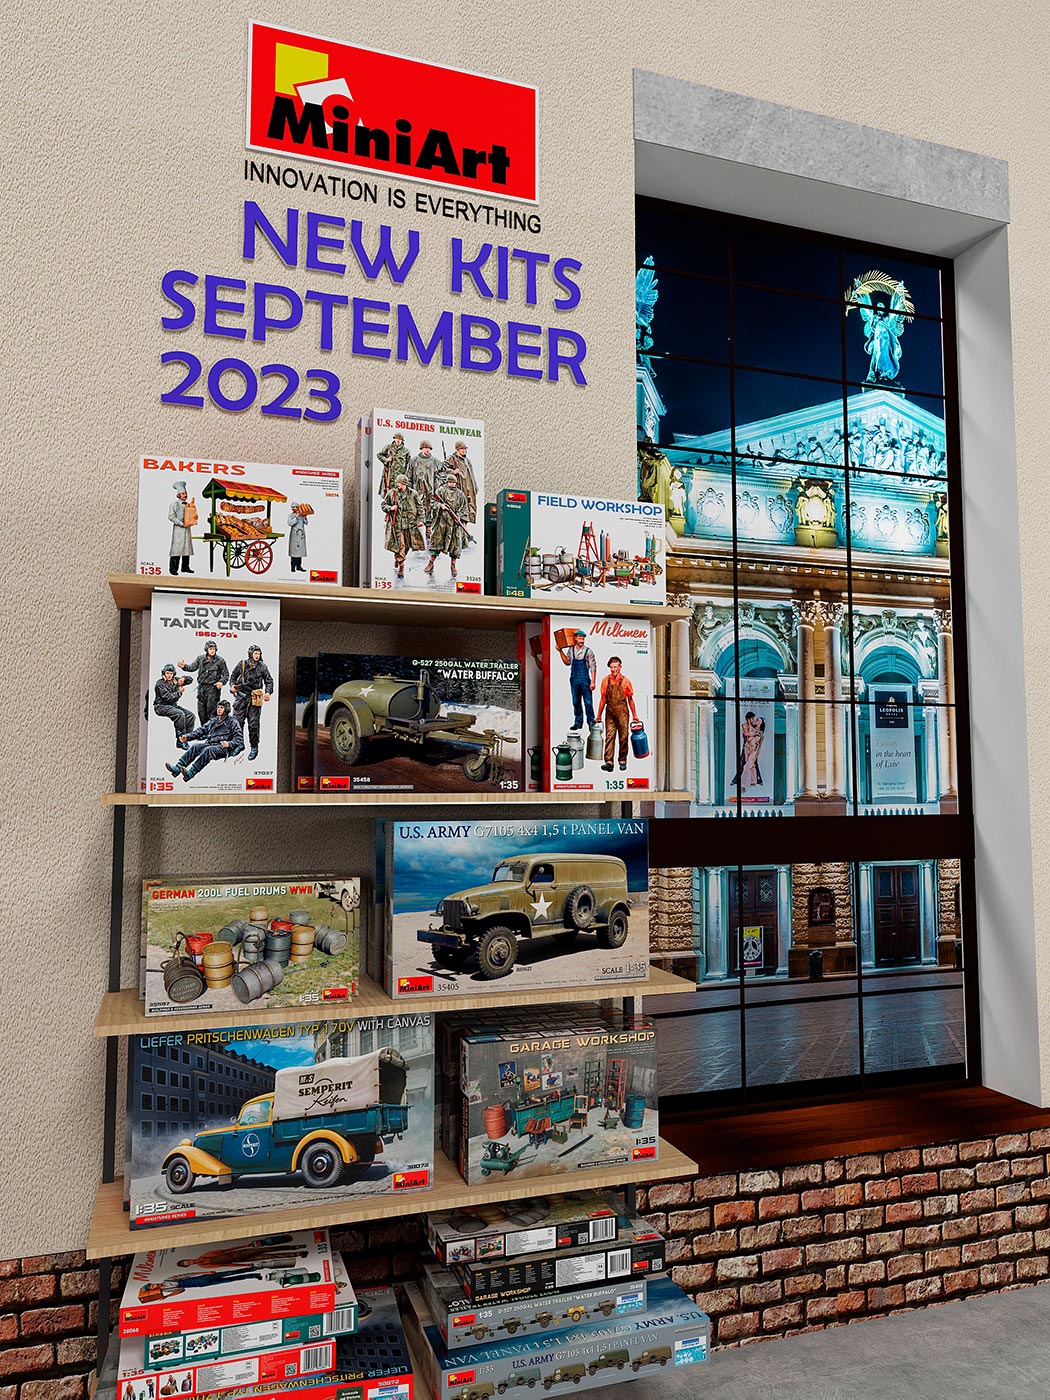 New MiniArt Kits Available September 2023